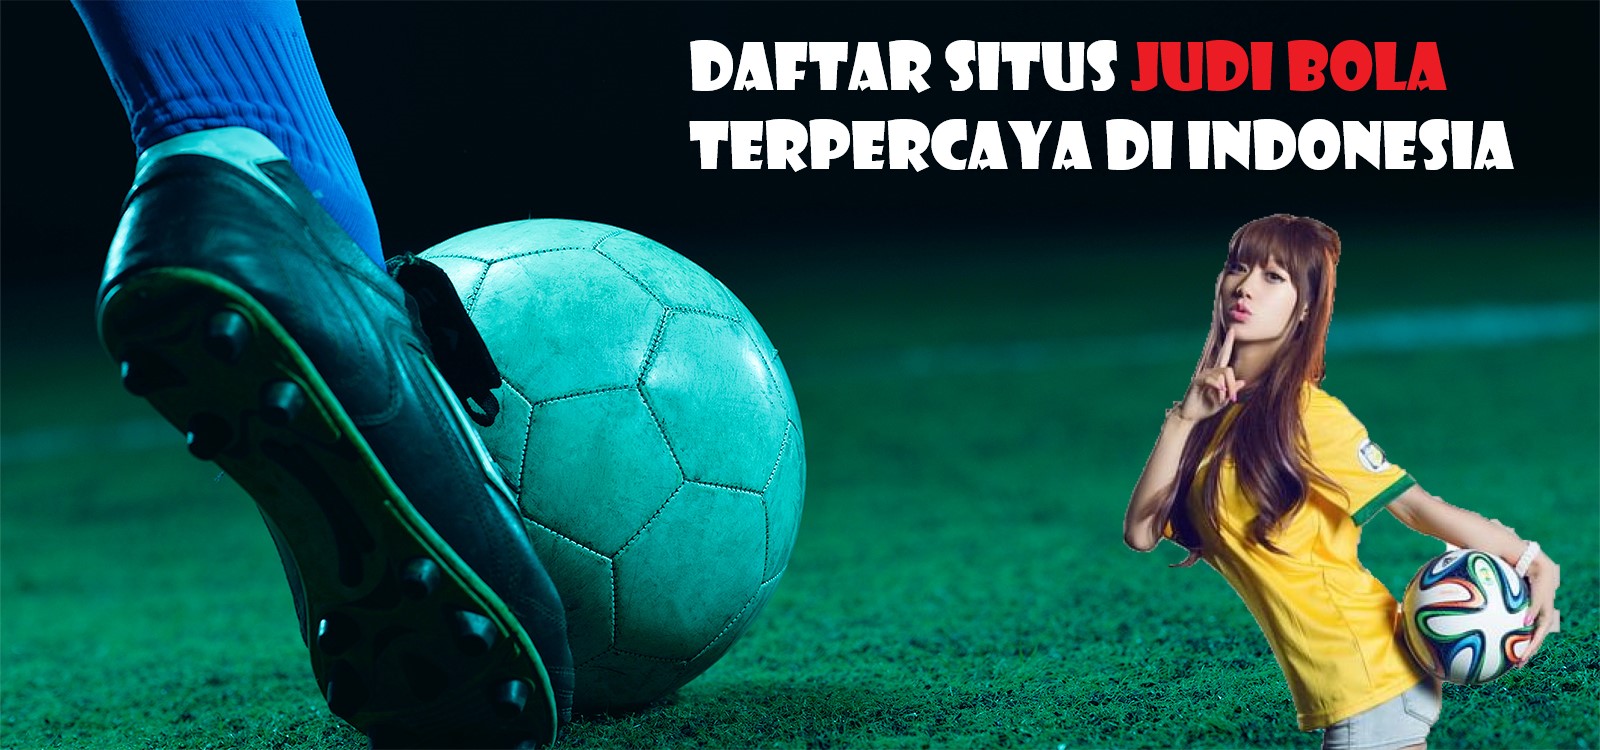 Daftar Situs Judi Bola Terpercaya Di Indonesia